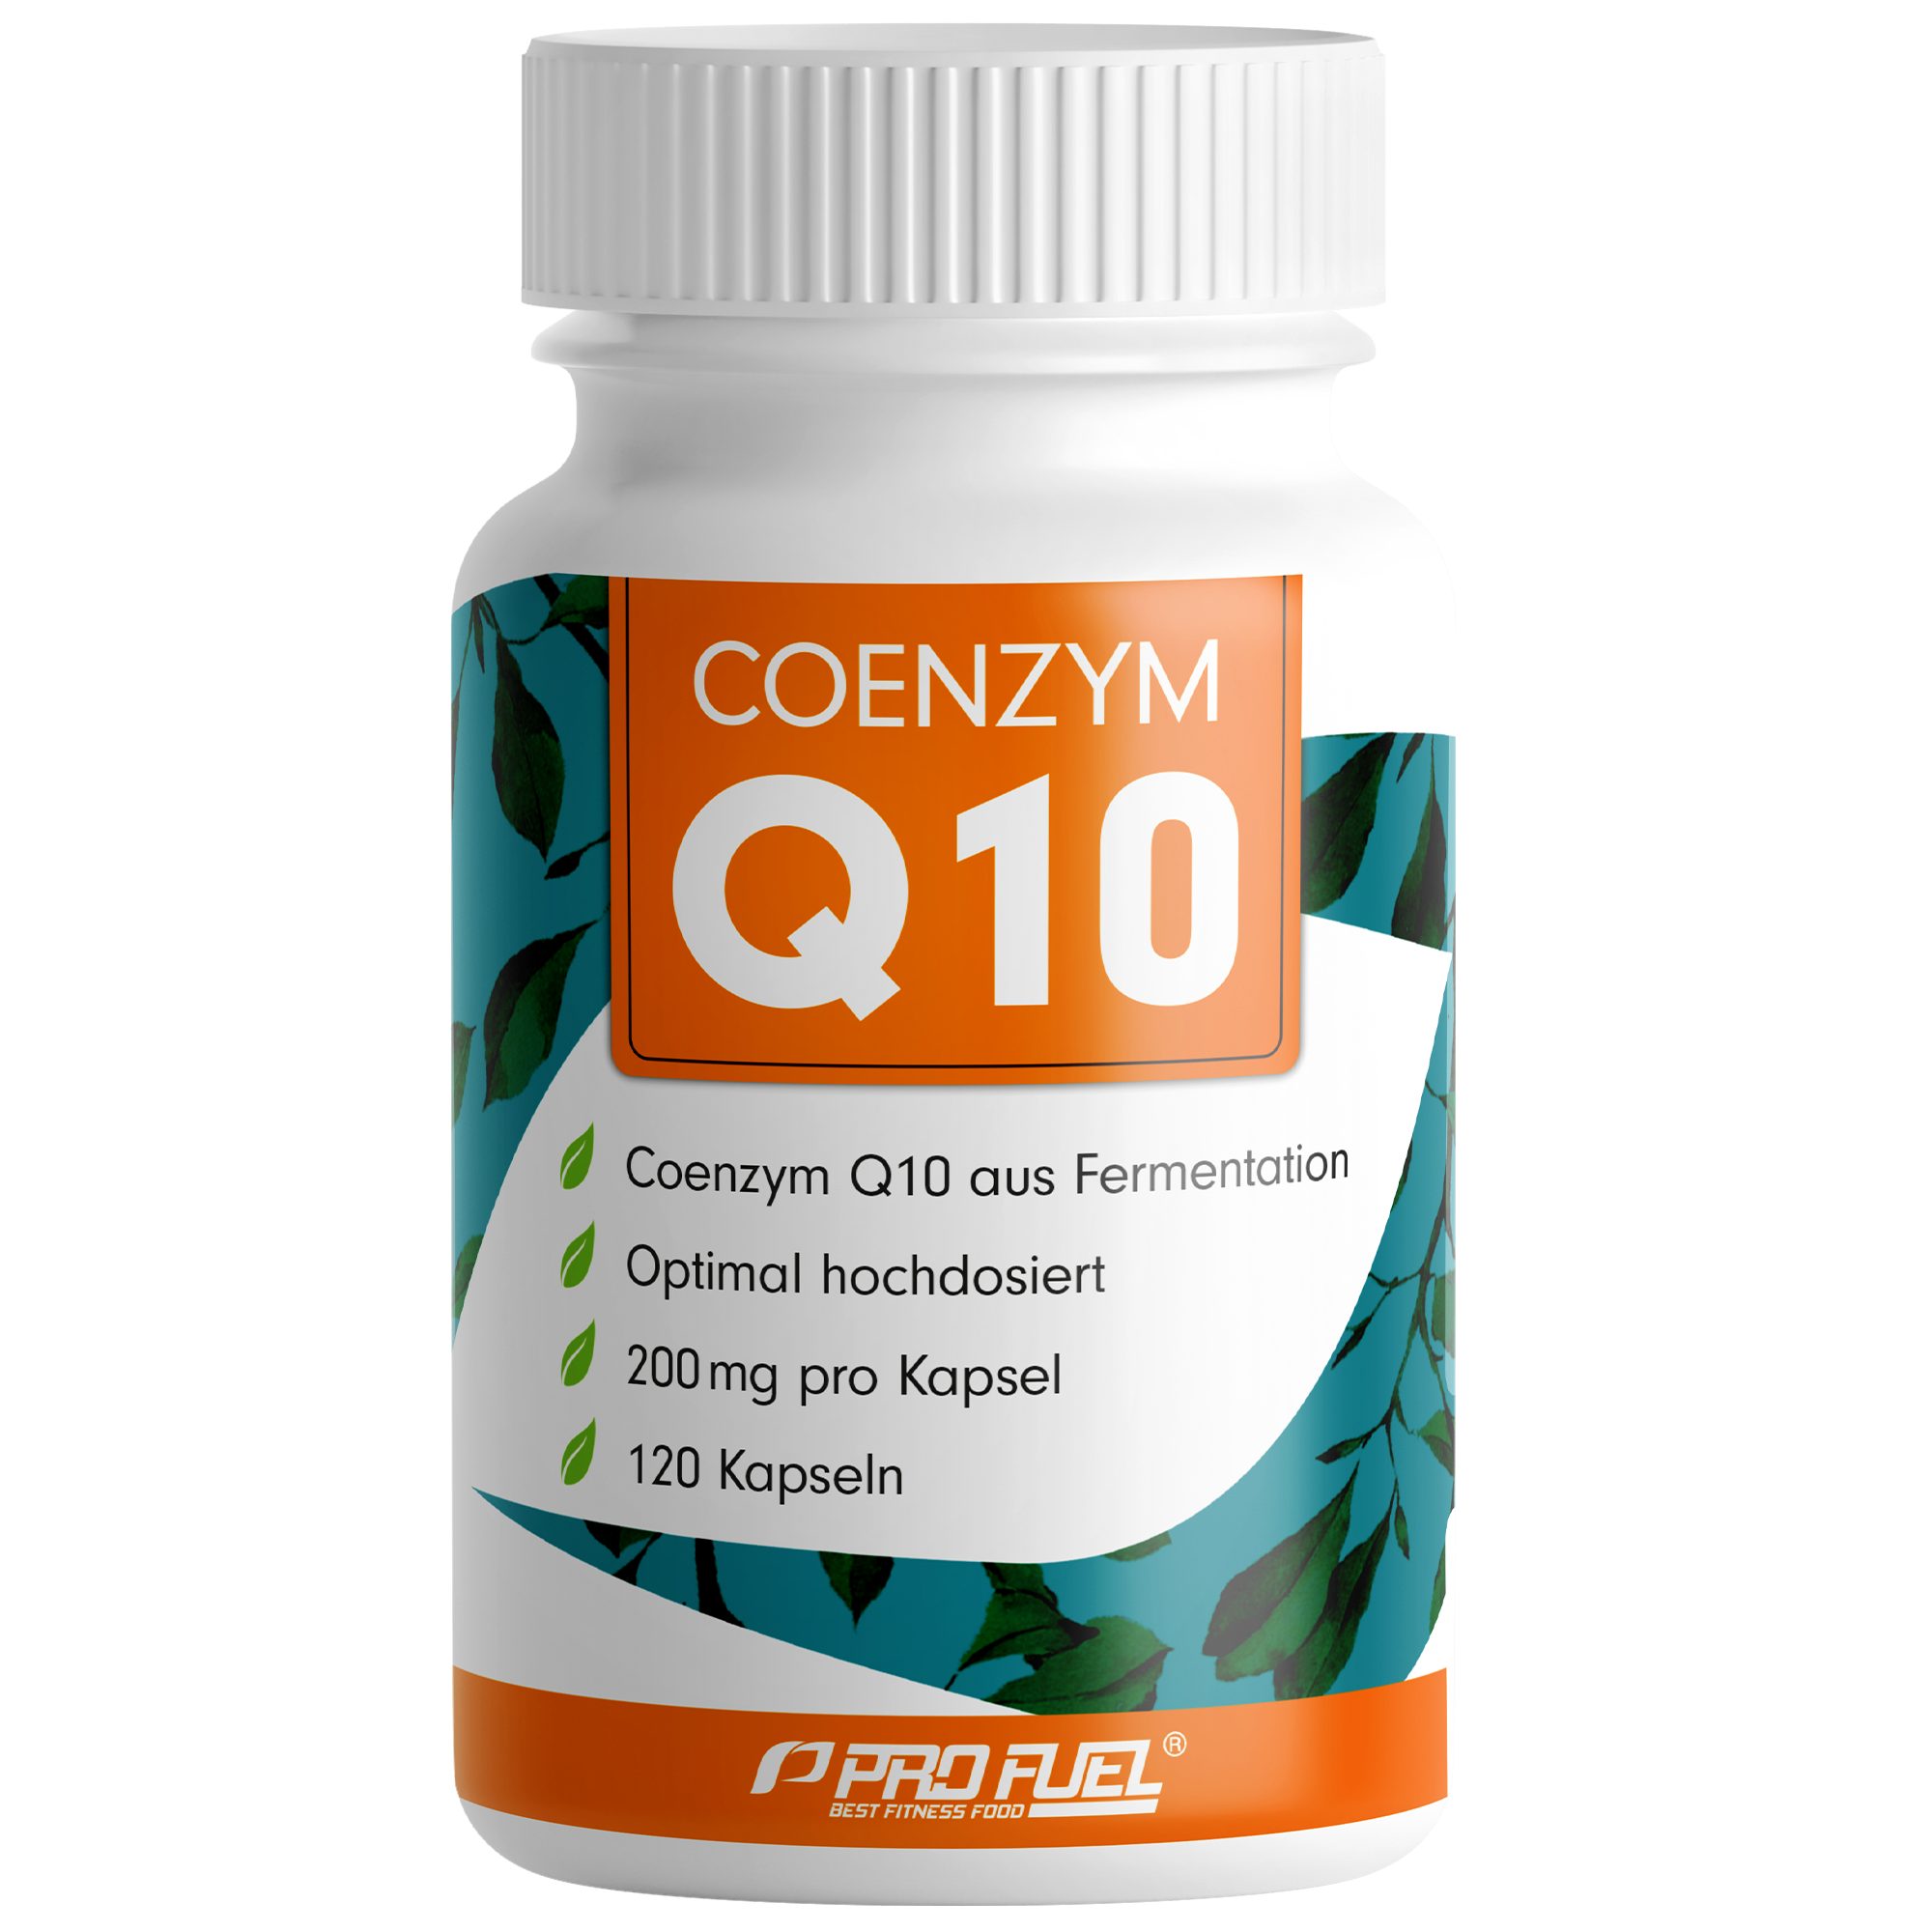 ProFuel Coenzym Q10 | 120 Kapseln | 4 Monats-Vorrat | hochwertiges Coenzym Q10 aus Fermentation | hochdosiert | ohne Zusätze | laborgeprüft | vegan